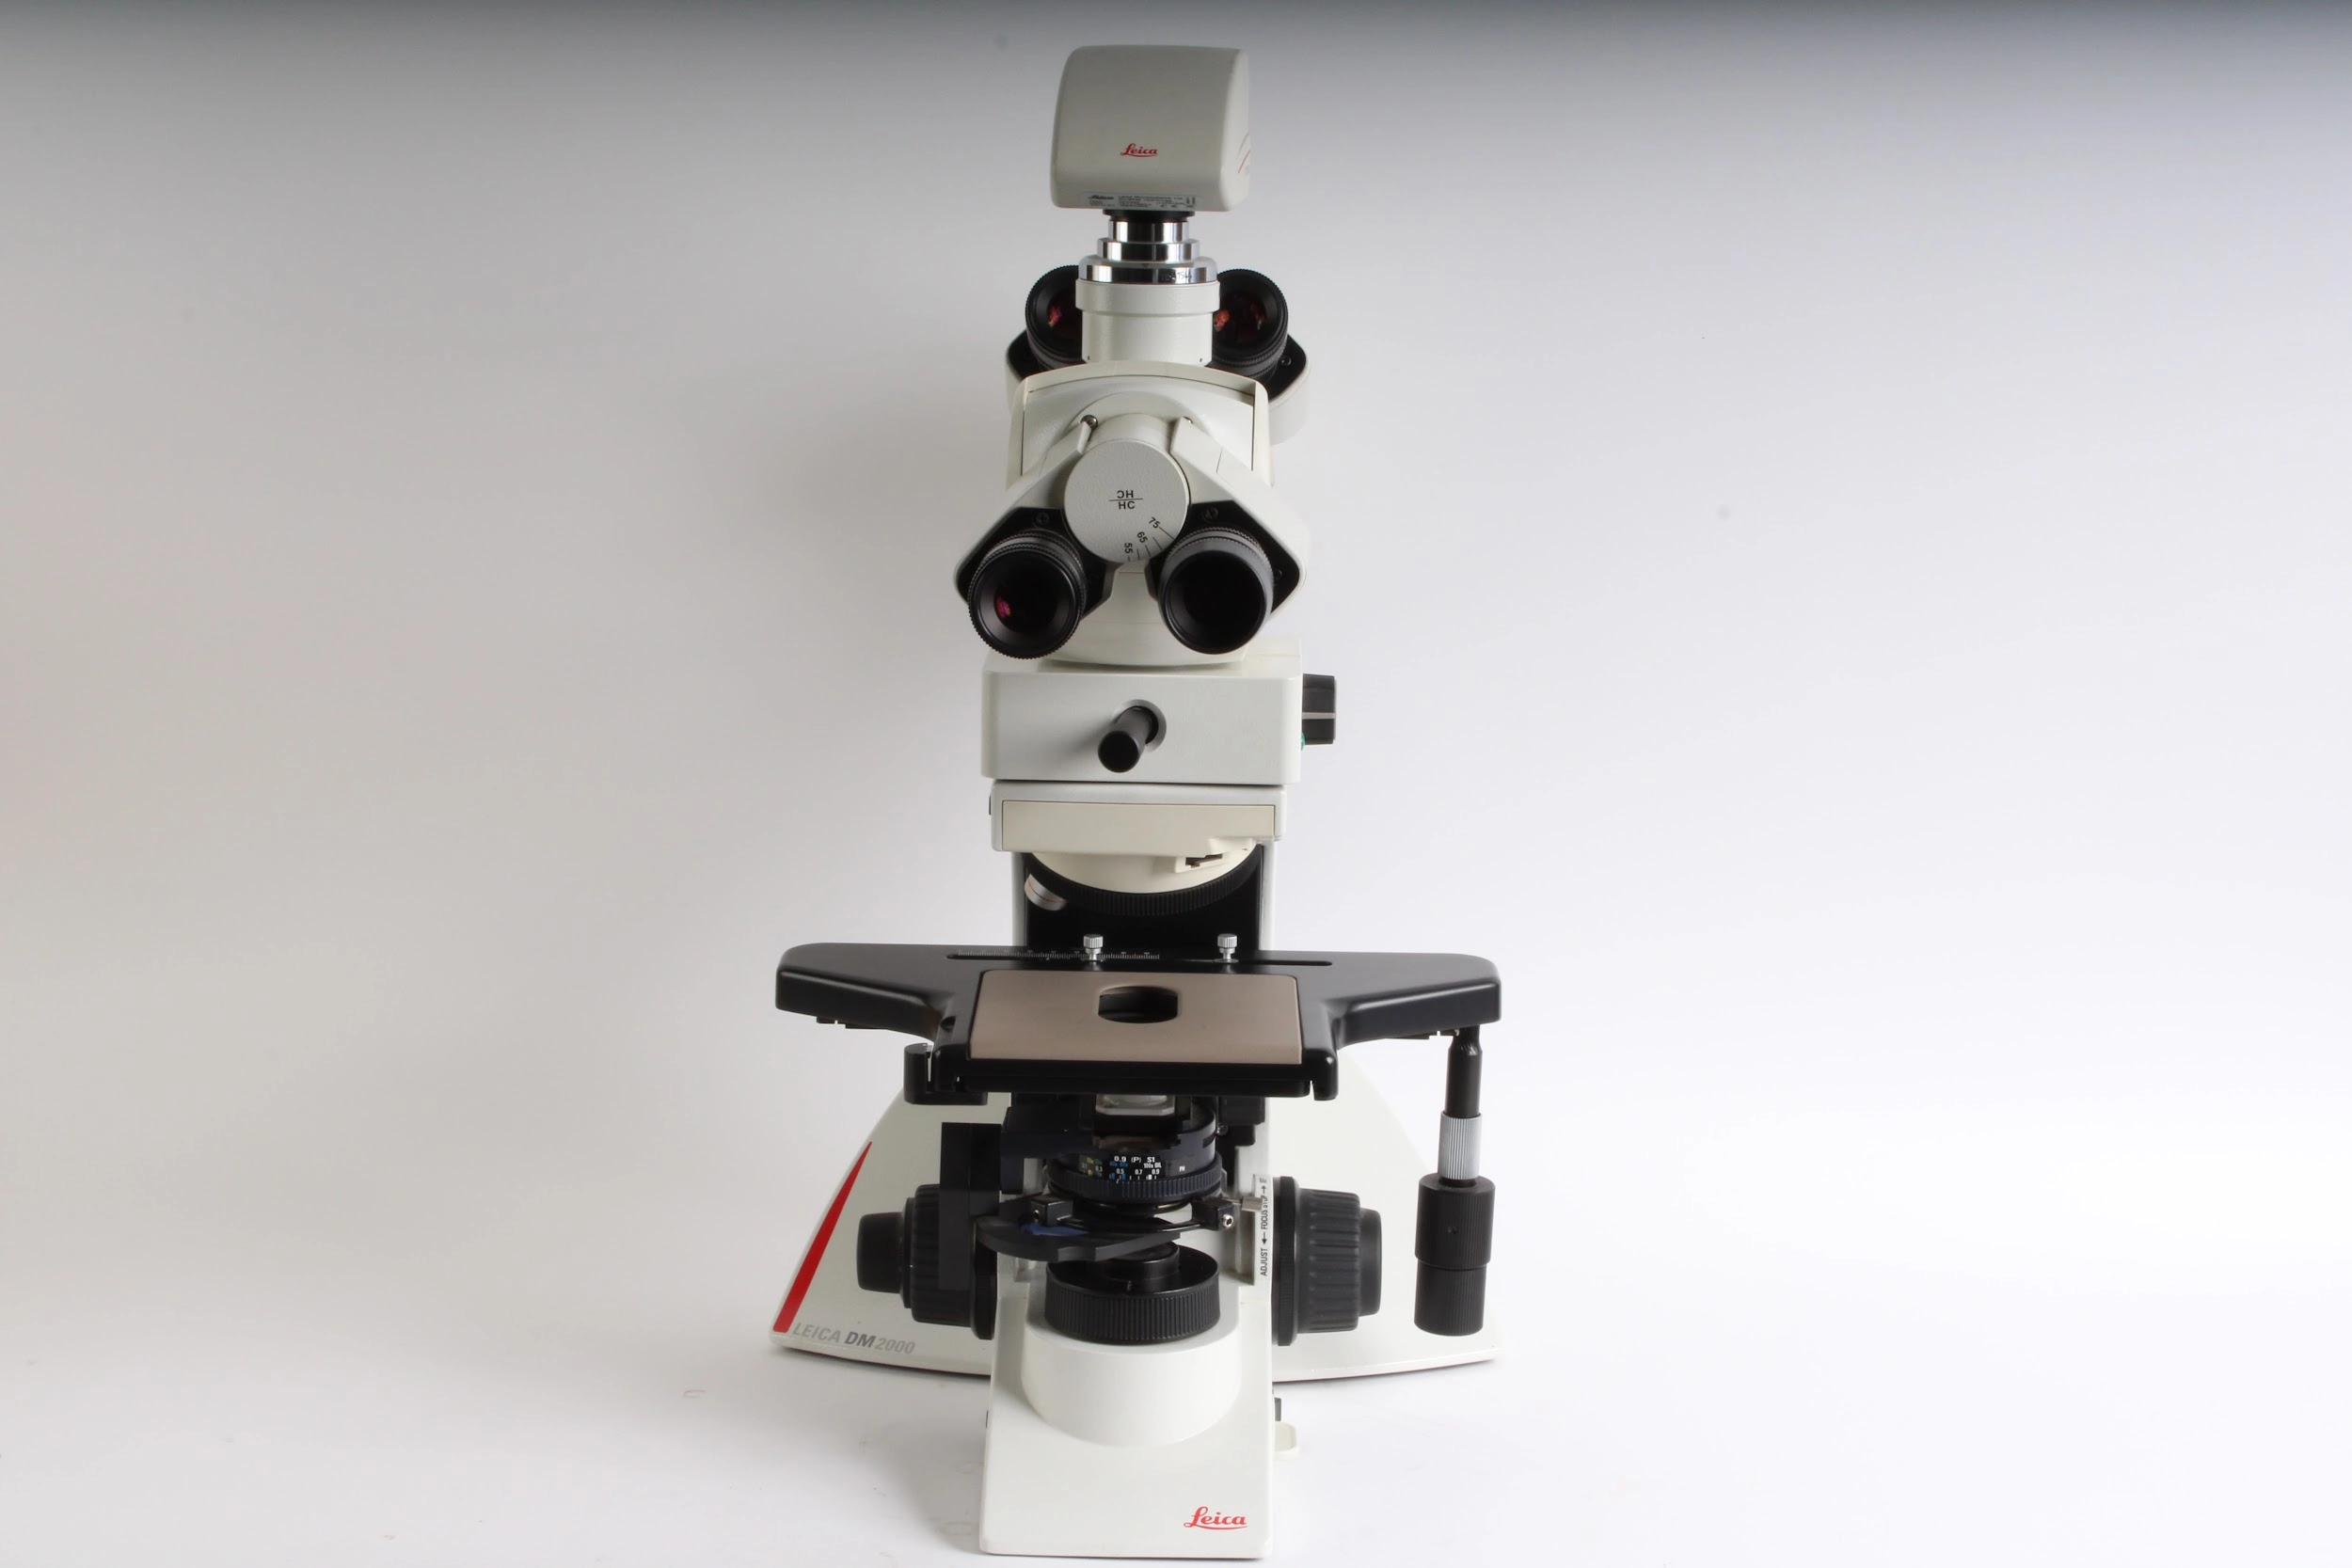 Leica DM2000 Microscope With 4x Leica 507807 Eyepieces and Objectives - Fair